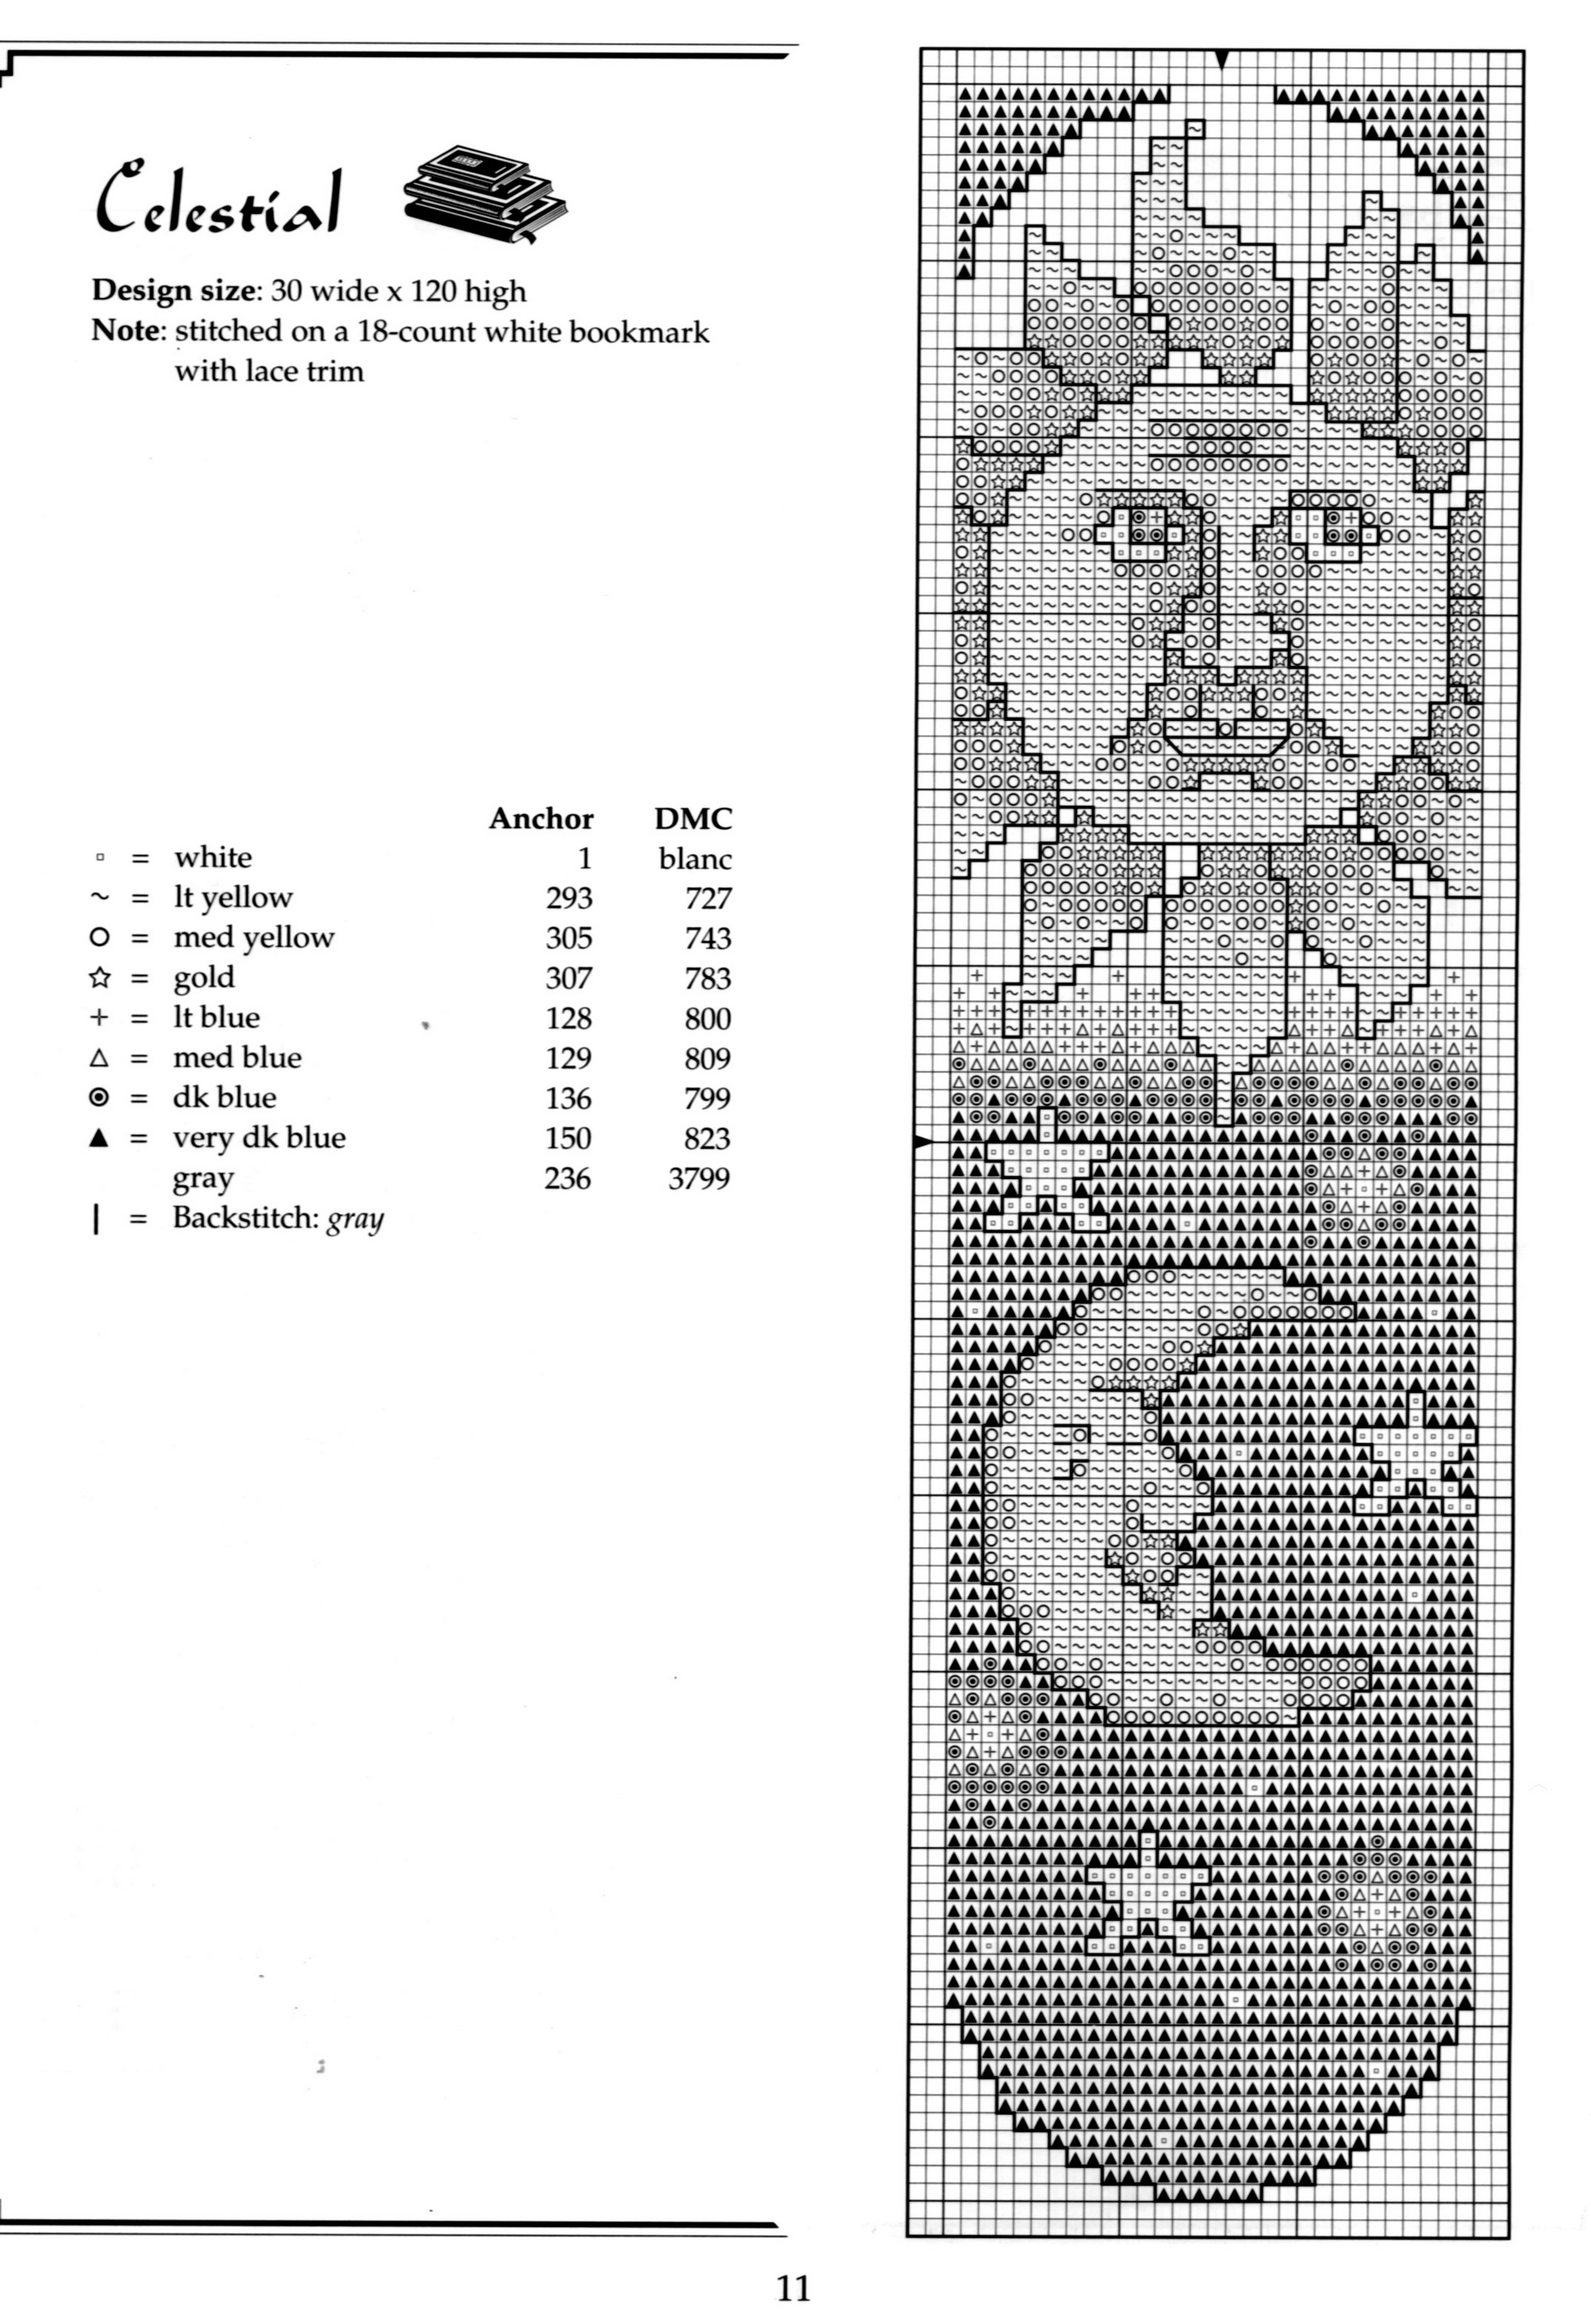 Подборка схем и картинок для вышивания крестиком в популярных форматах